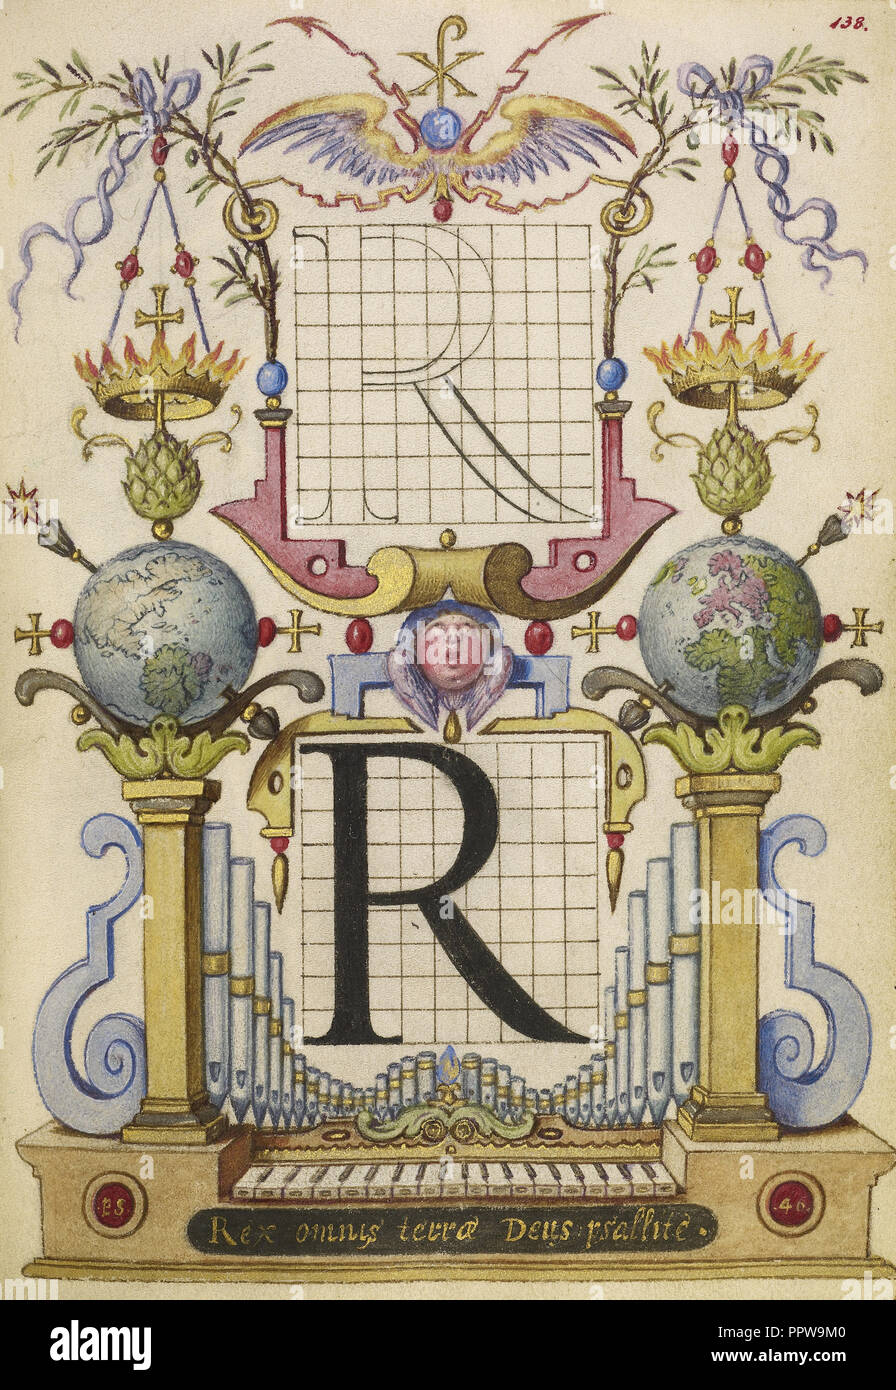 Guide pour la construction de la lettre R ; Joris Hoefnagel, flamand , hongrois, 1542 - 1600, Vienne, Autriche ; environ 1591 - 1596 Banque D'Images